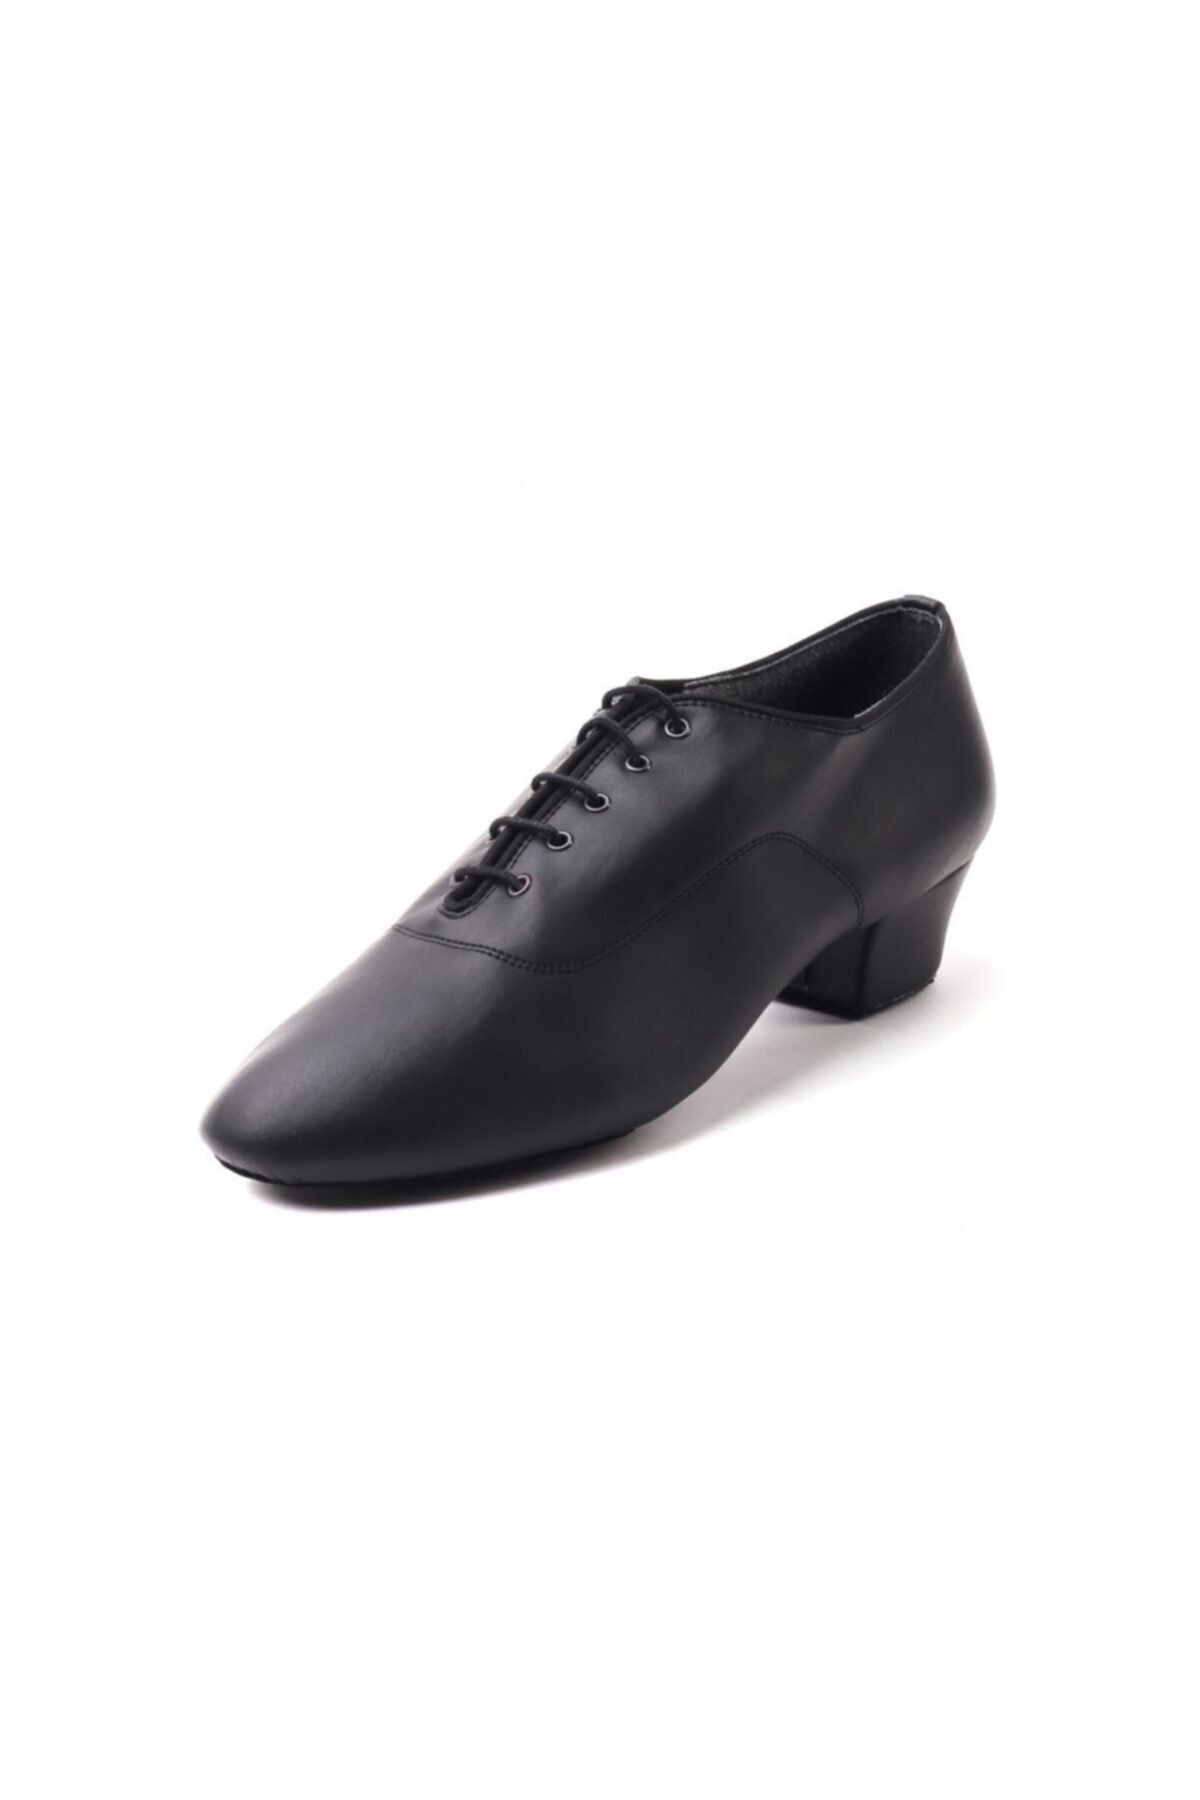 DANS AYAKKABISI Erkek Siyah Klasik Topuklu Ayakkabı